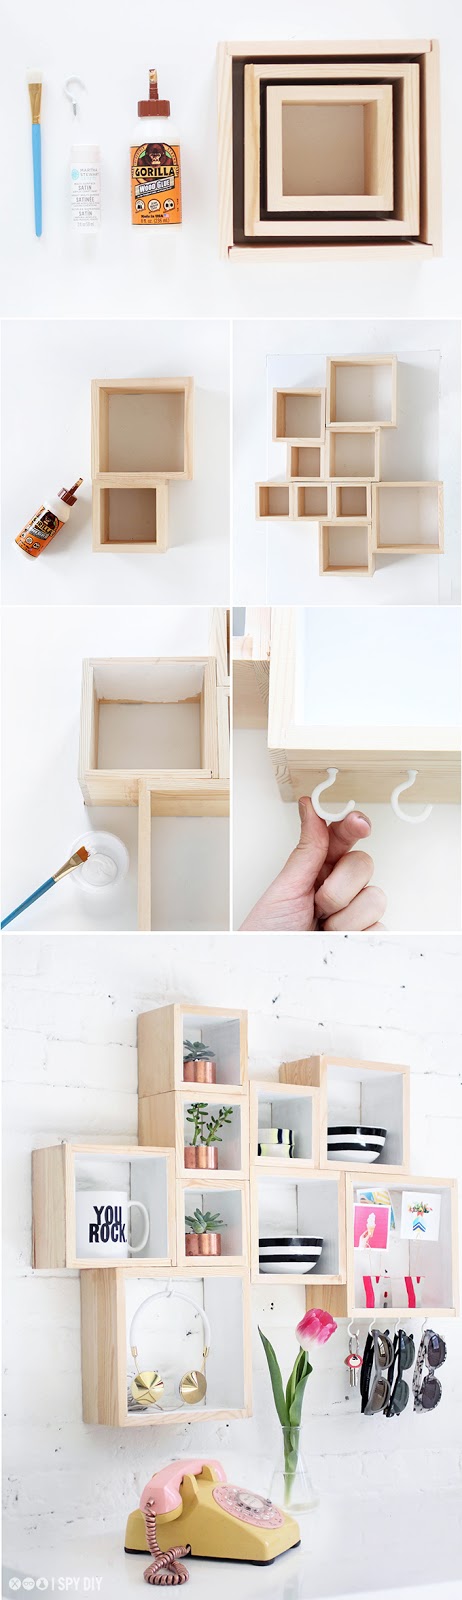 diy-estanteria-modular-cubos-madera-box-shelf